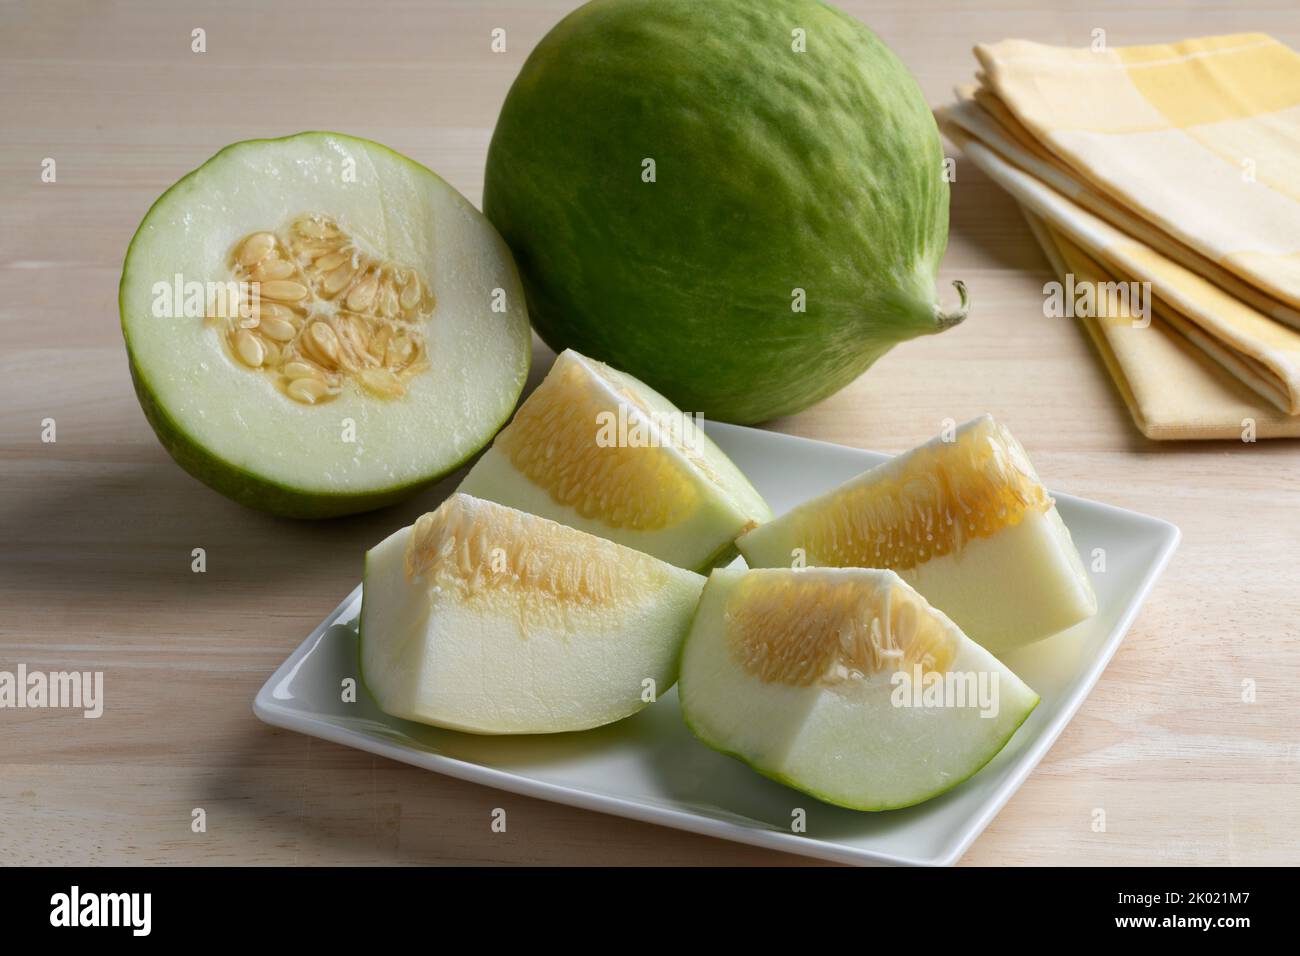 Fruta Cumelo italiana entera y cortada a la mitad, barattiera, en un plato de primer plano para postre Foto de stock